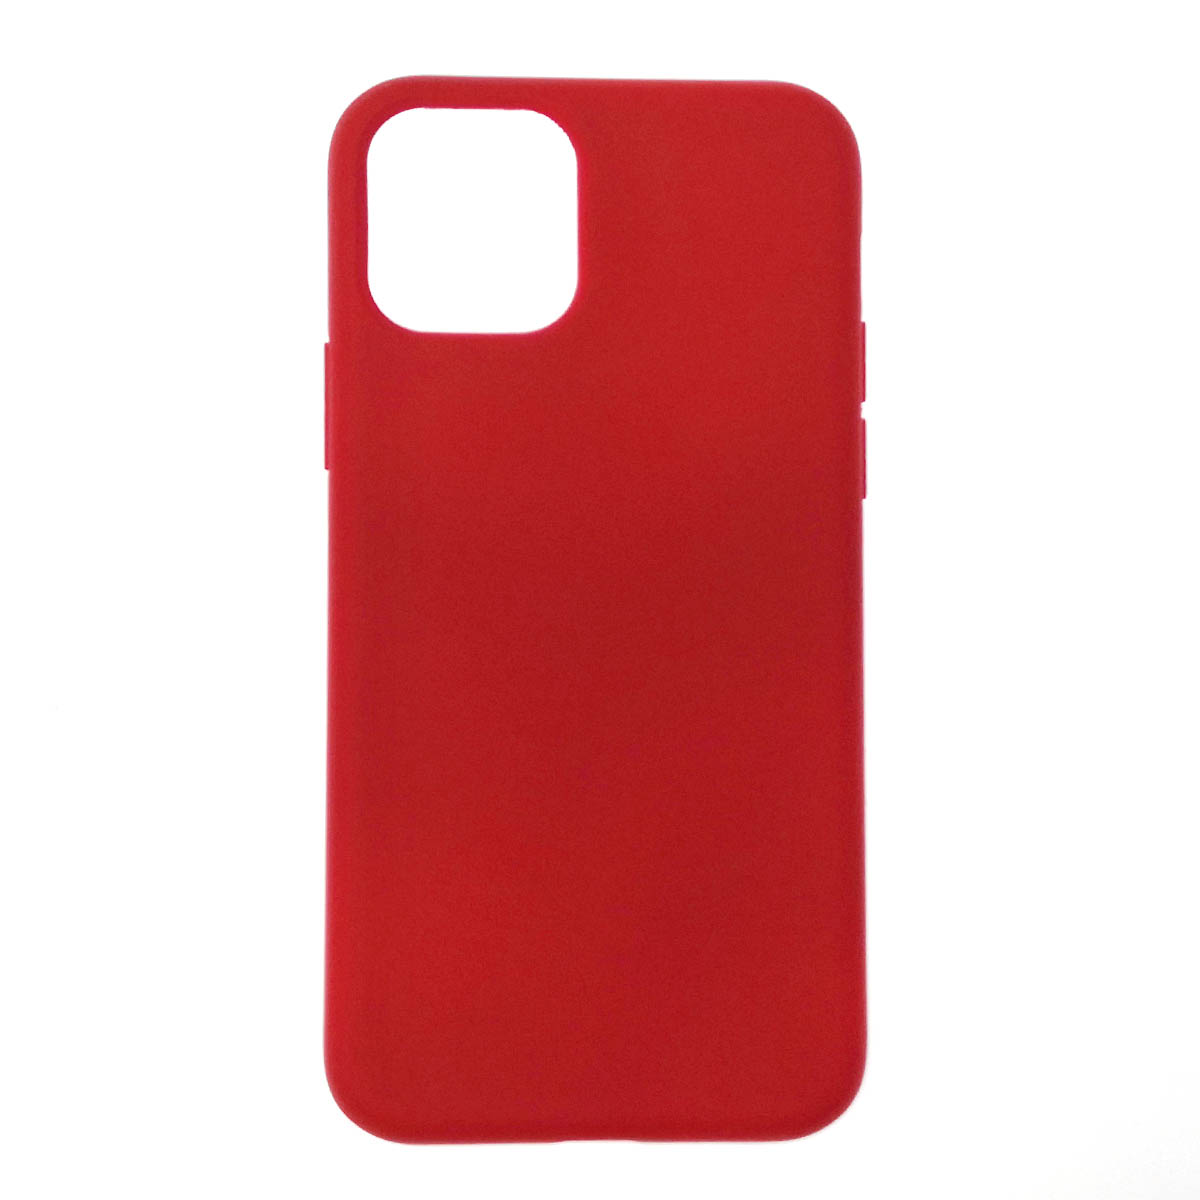 Чехол накладка Silicon Case для APPLE iPhone 11 Pro 2019, силикон, бархат, цвет красный